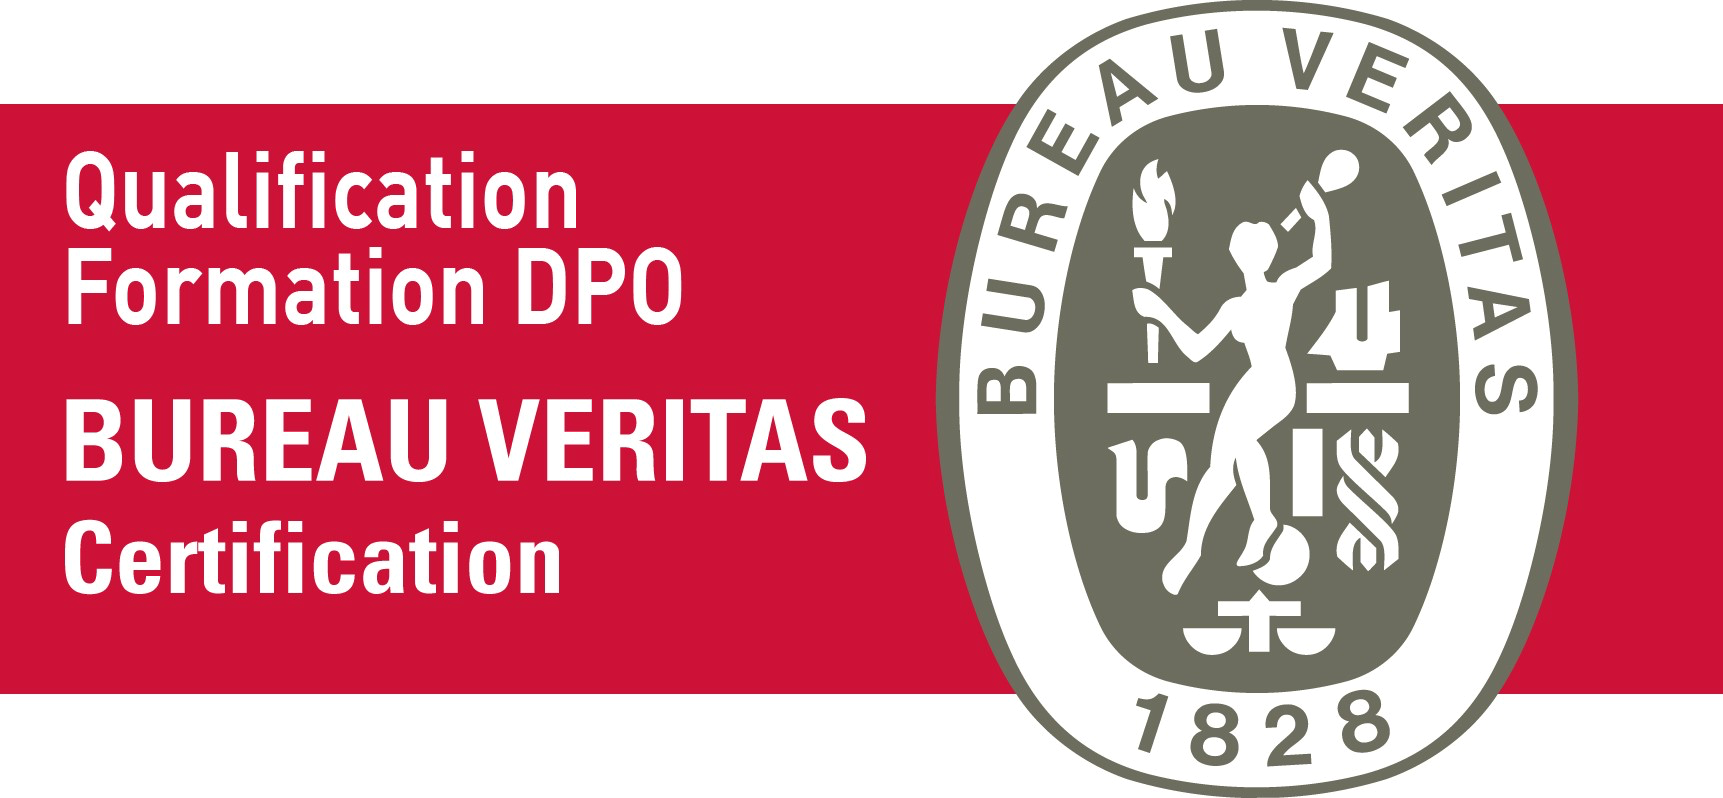 Qualification Formation DPO - Veritas